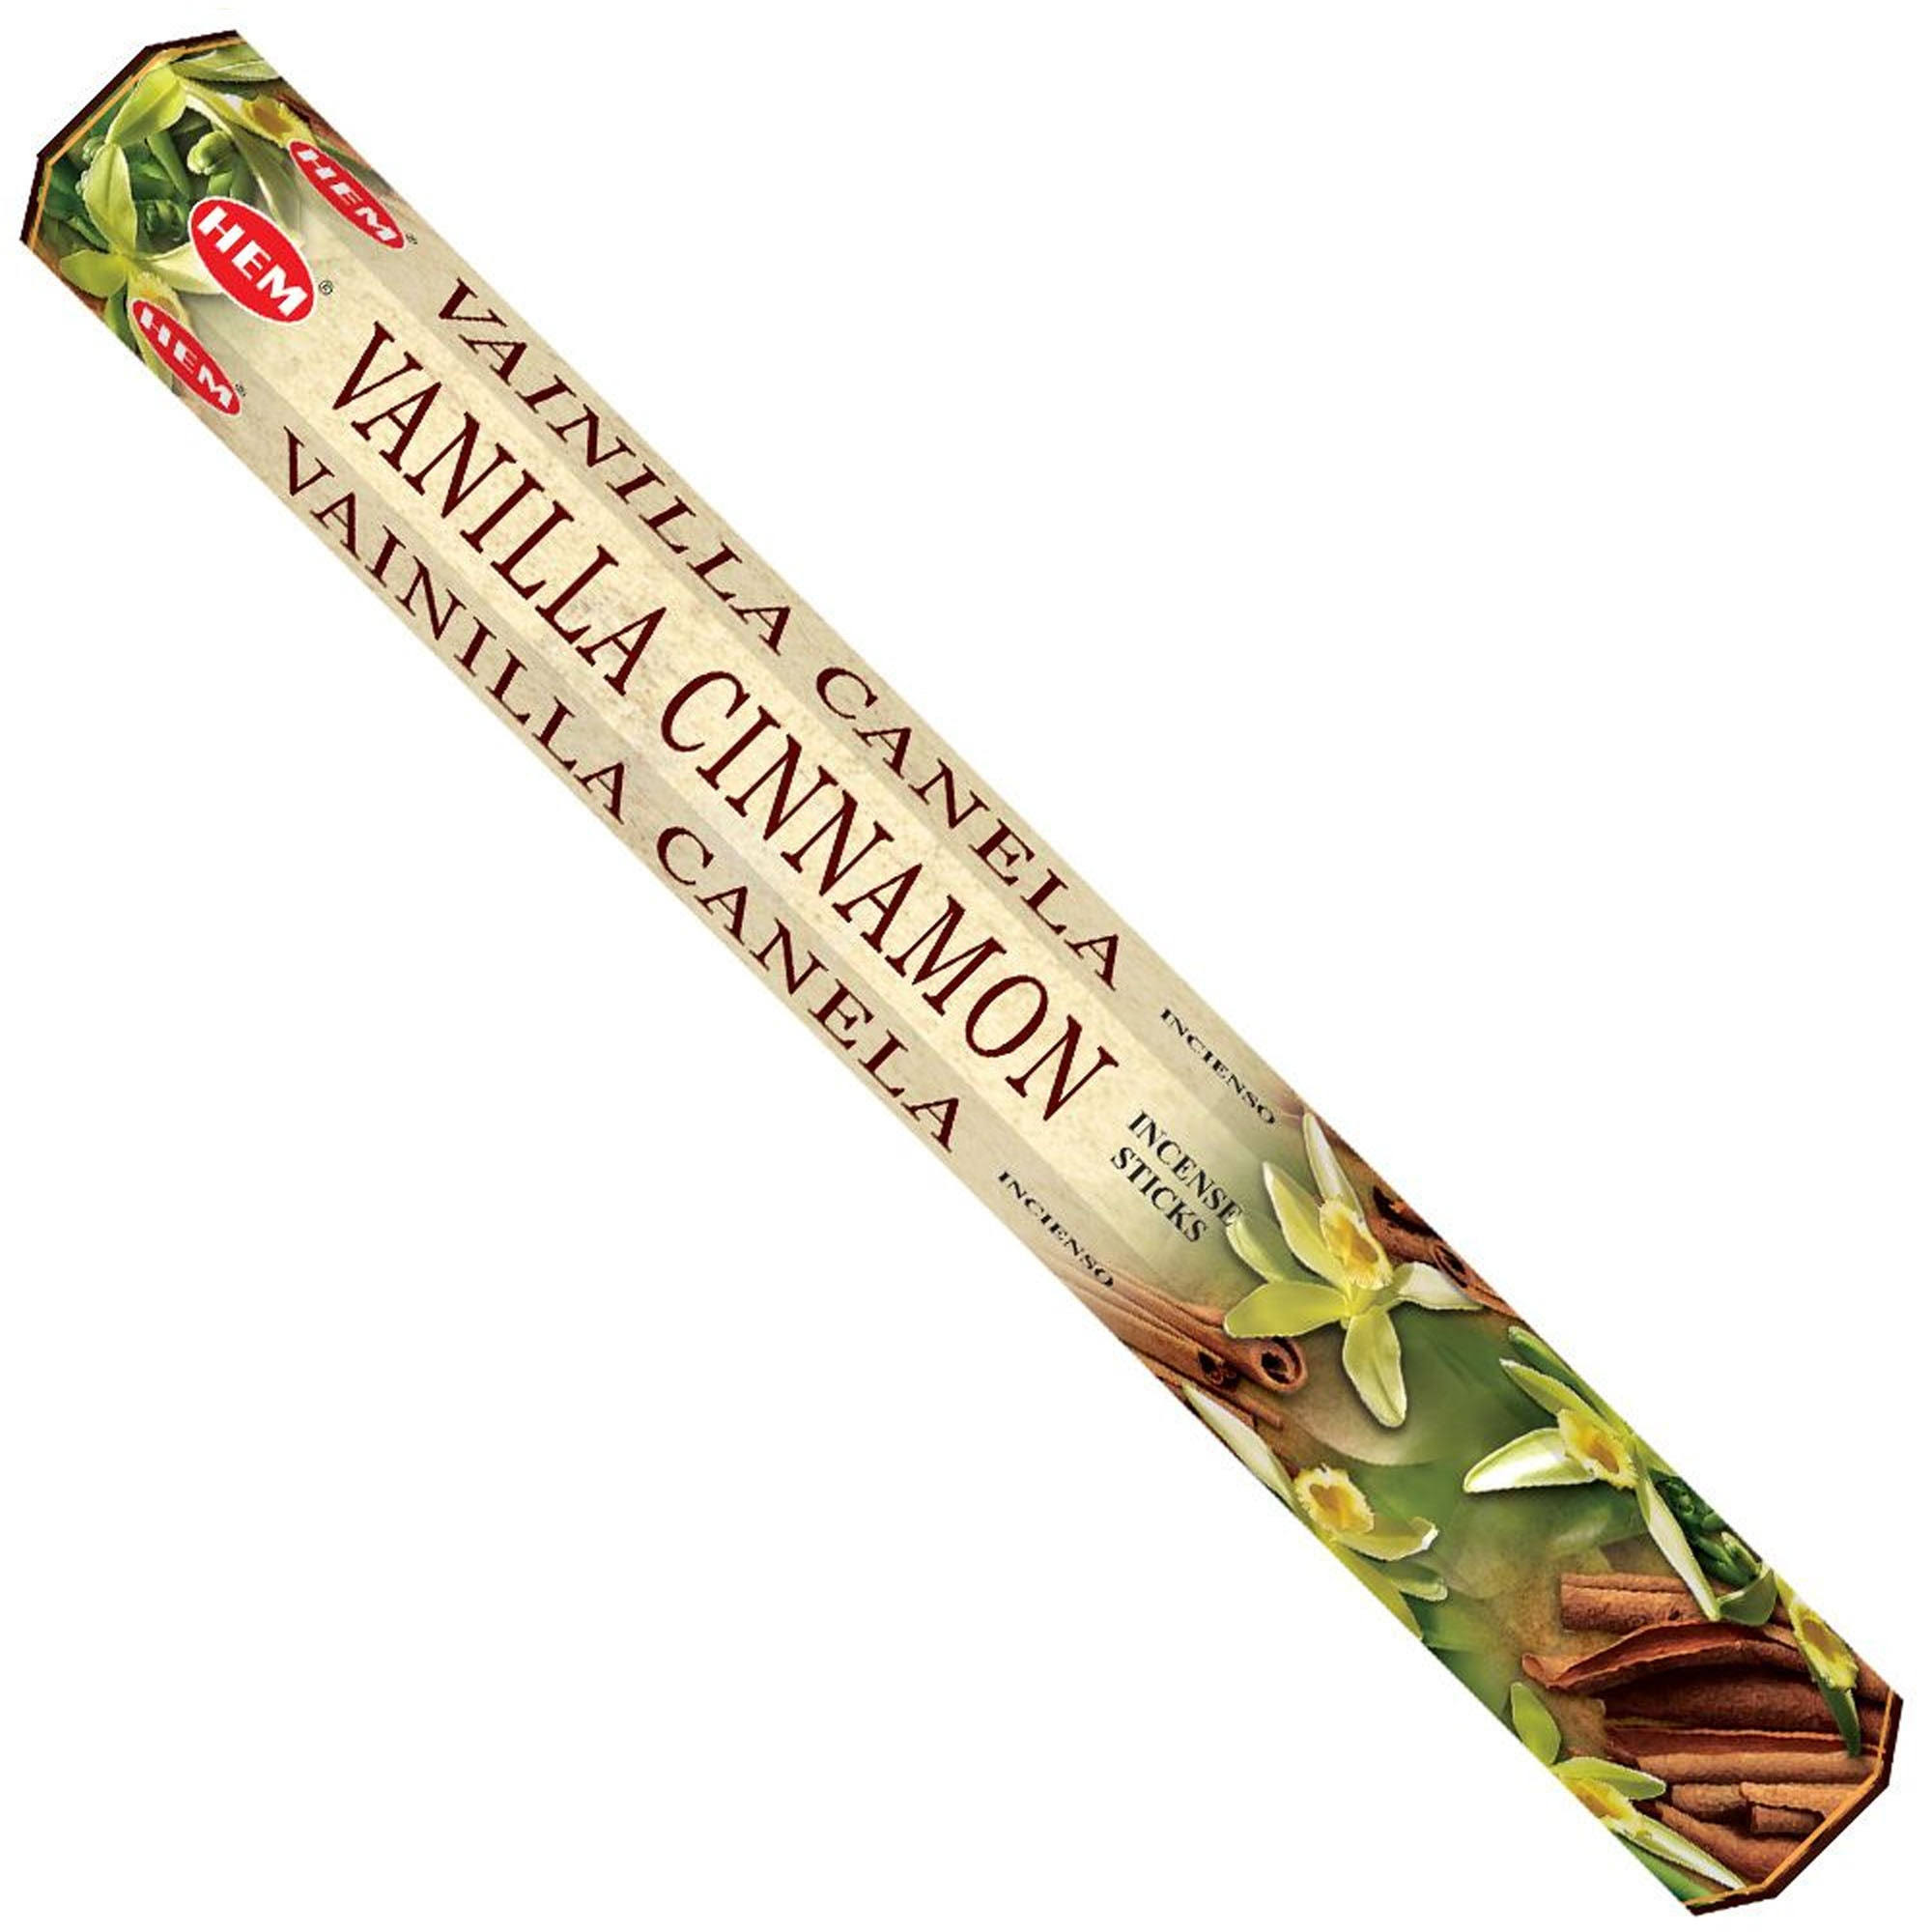 Hem Incense Sticks - Vanilla Cinnamon, 3 Packets, 60 Sticks